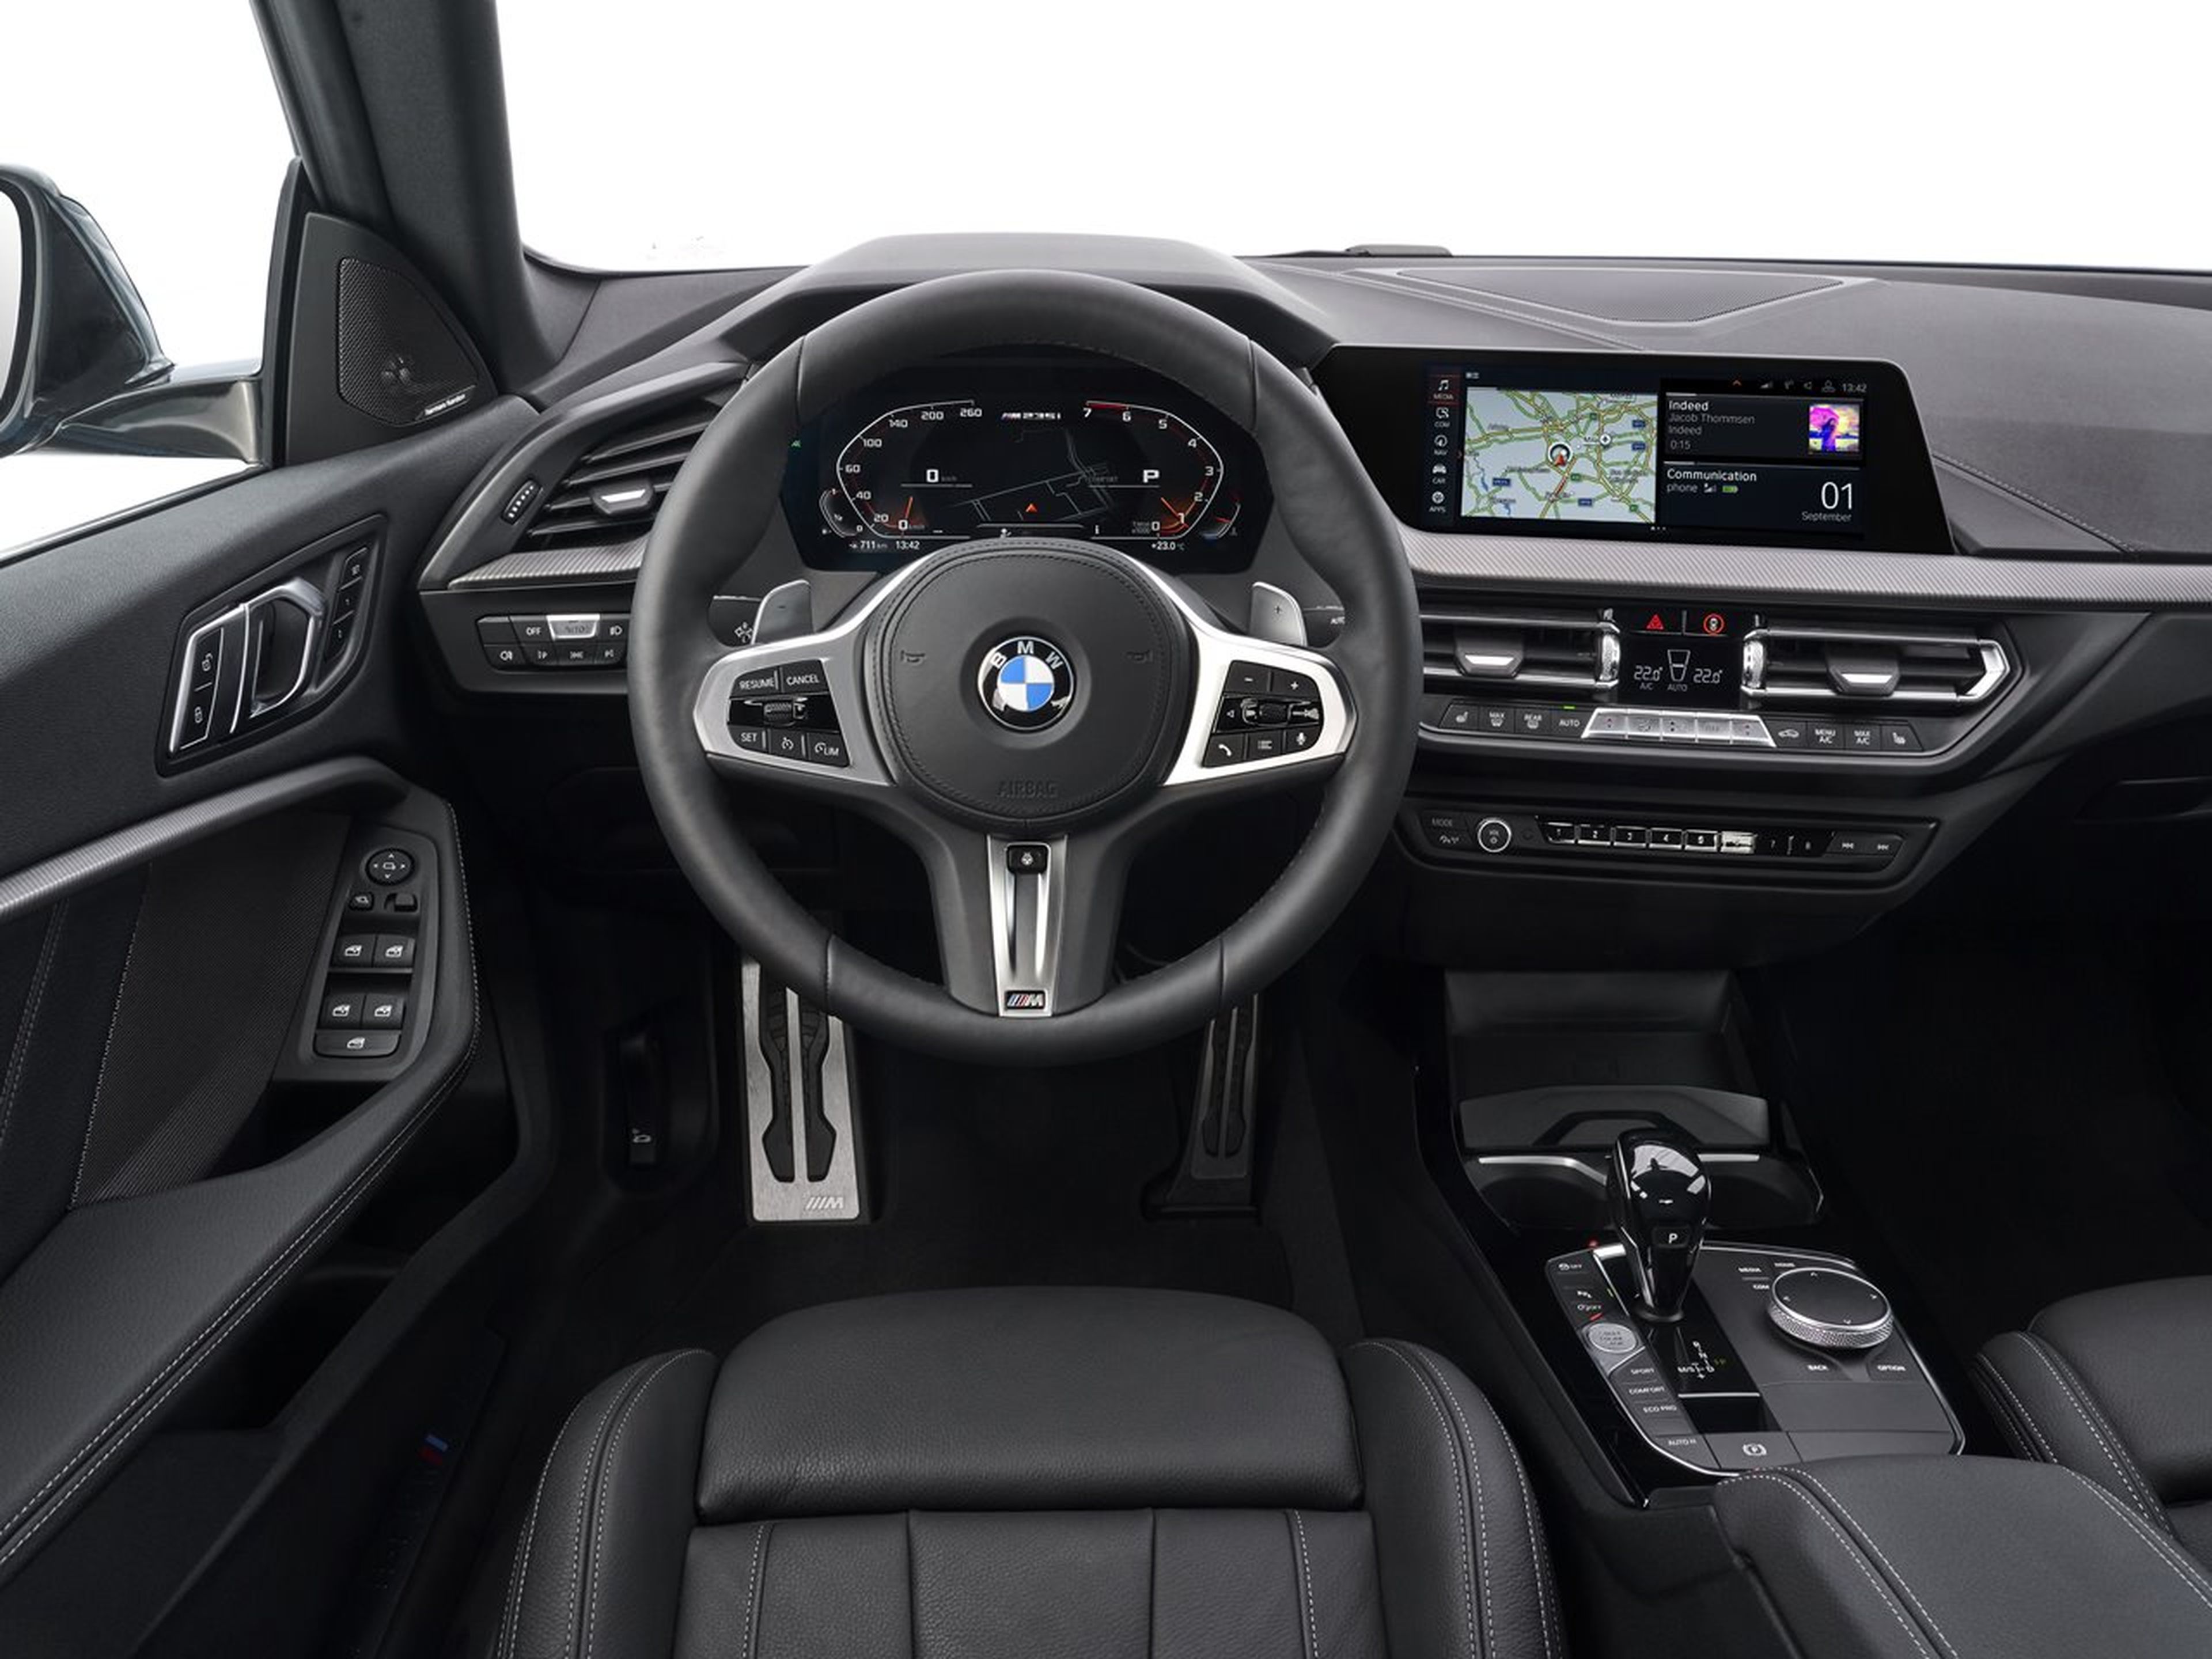 BMW Serie 2 Gran Coupe interior